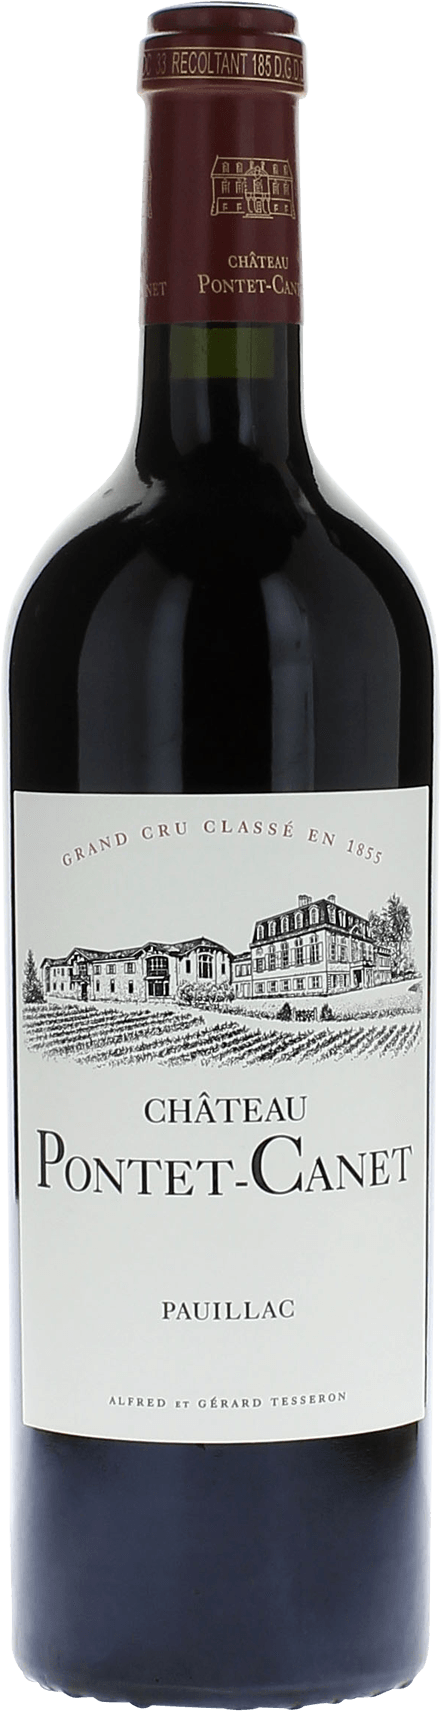 Pontet canet 1985 5me Grand cru class Pauillac, Bordeaux rouge